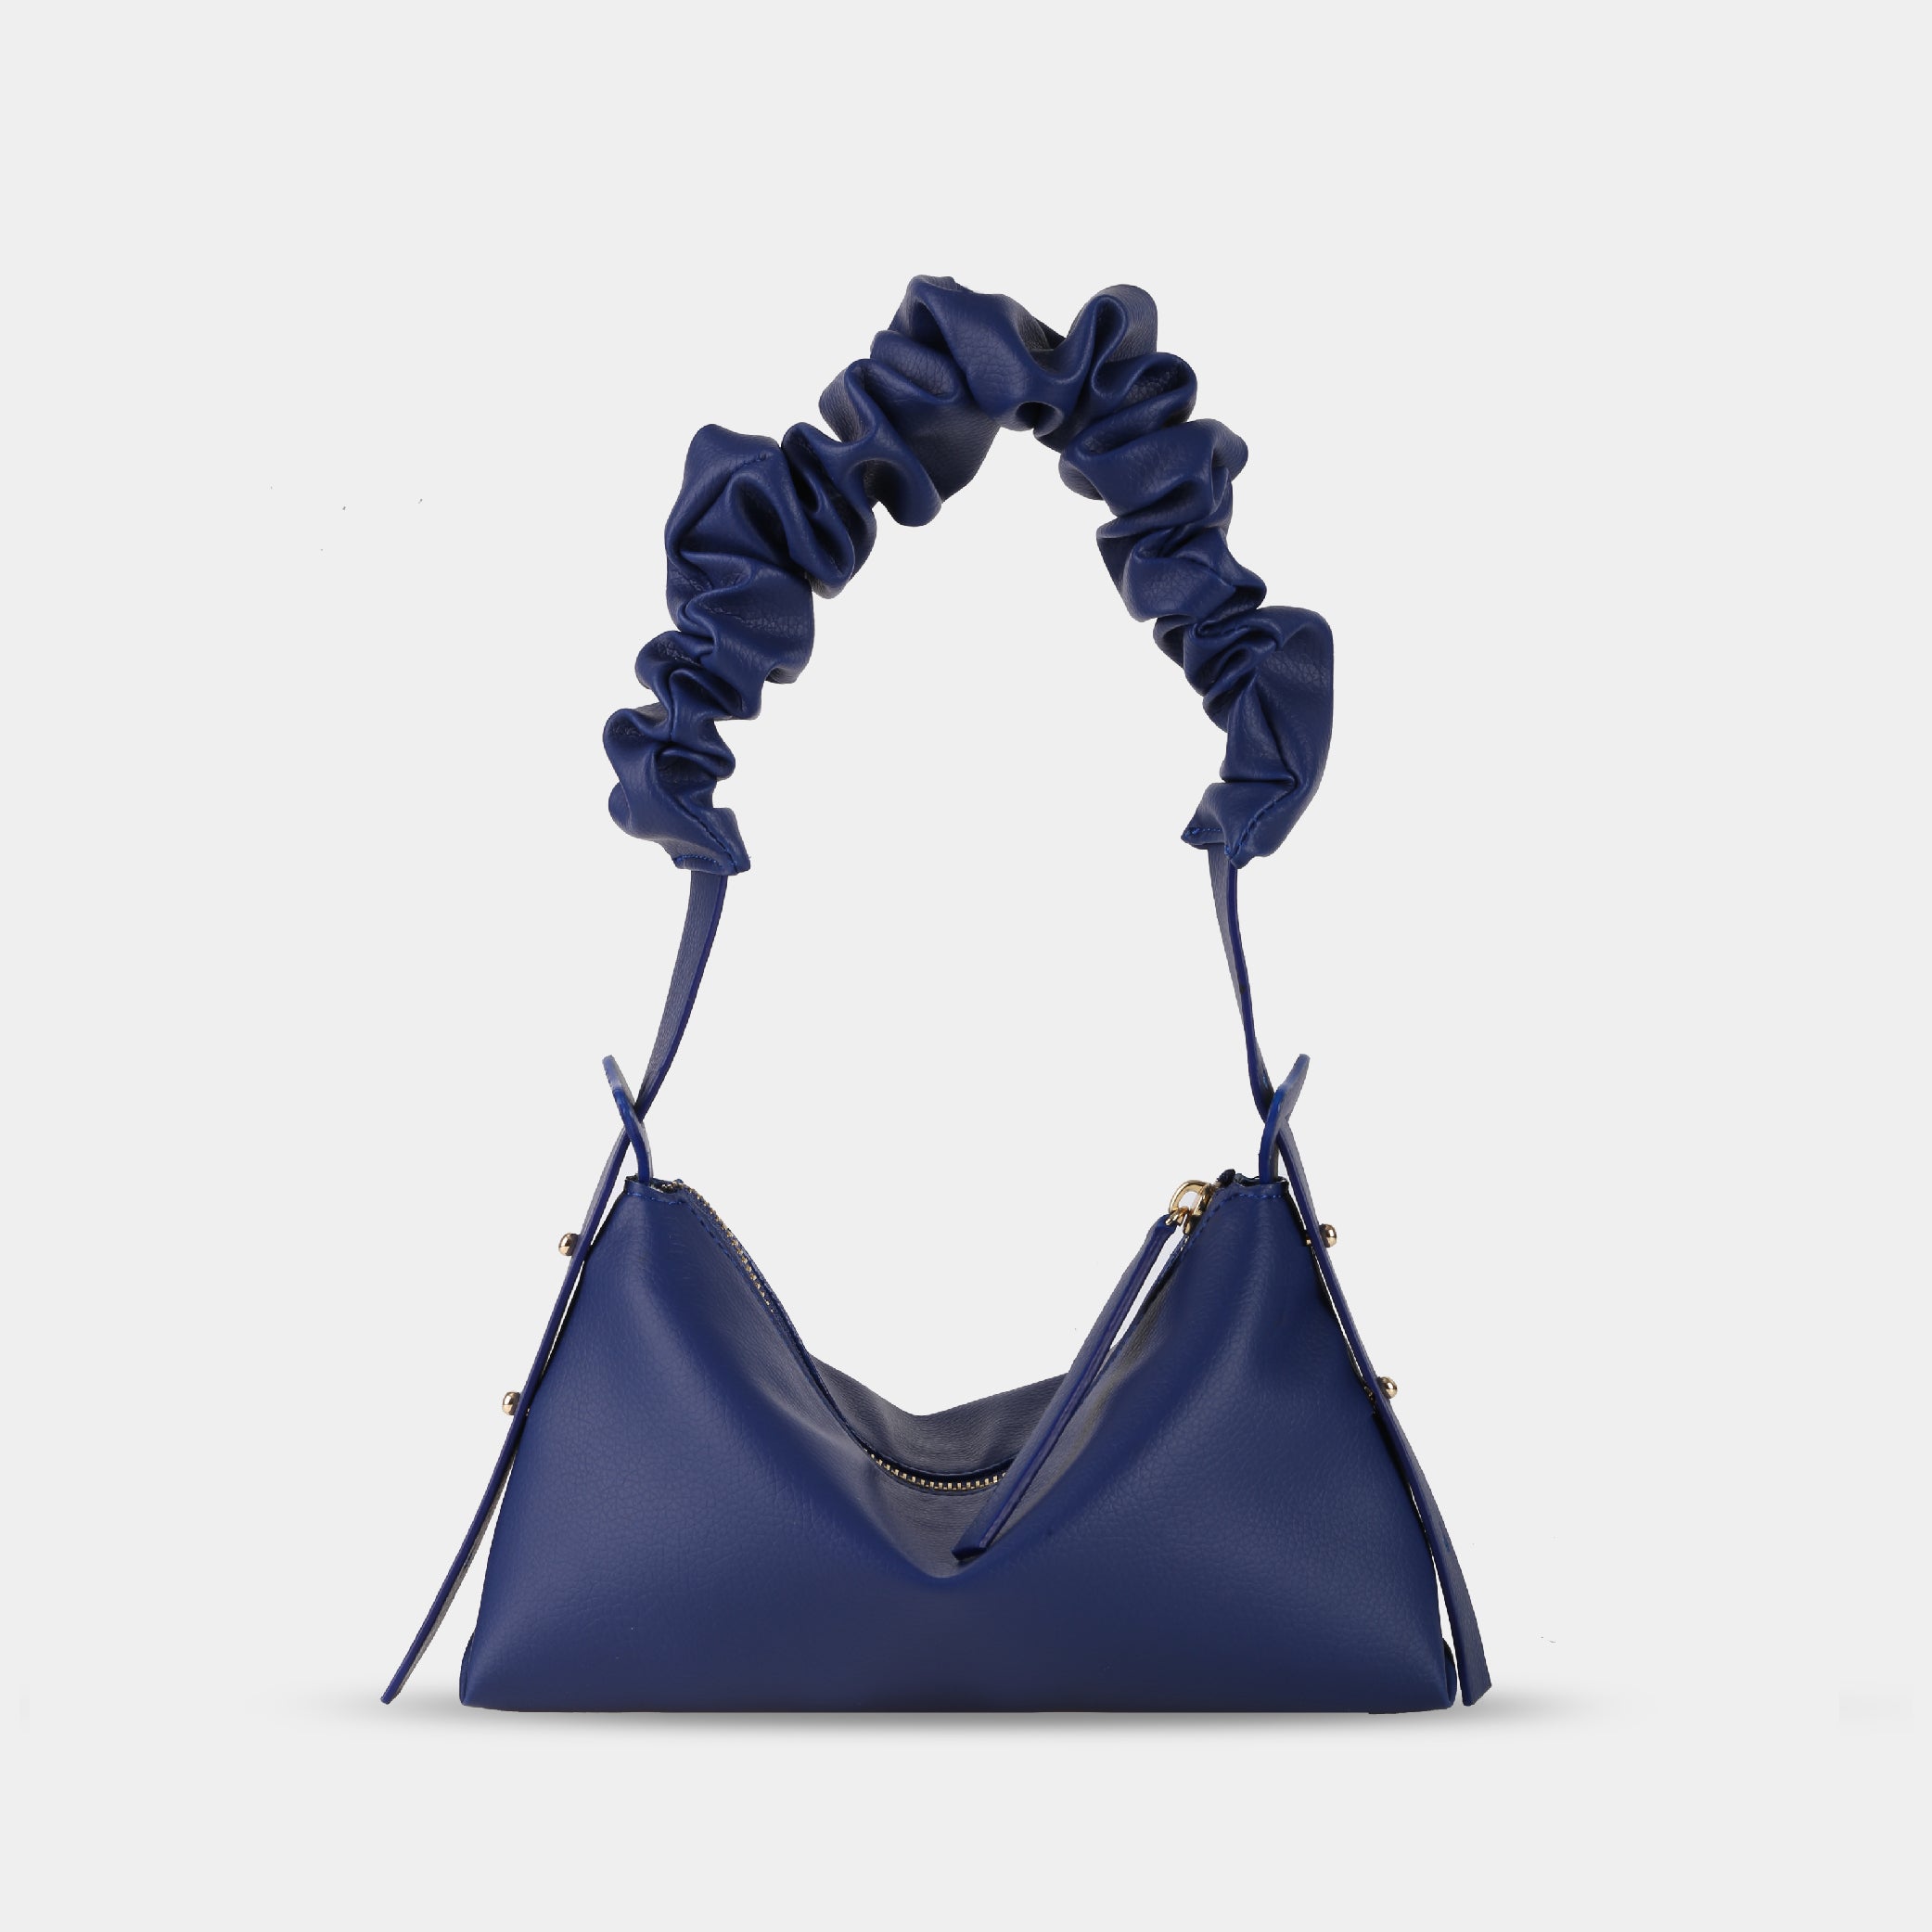 Blue M BAG handbag (small)